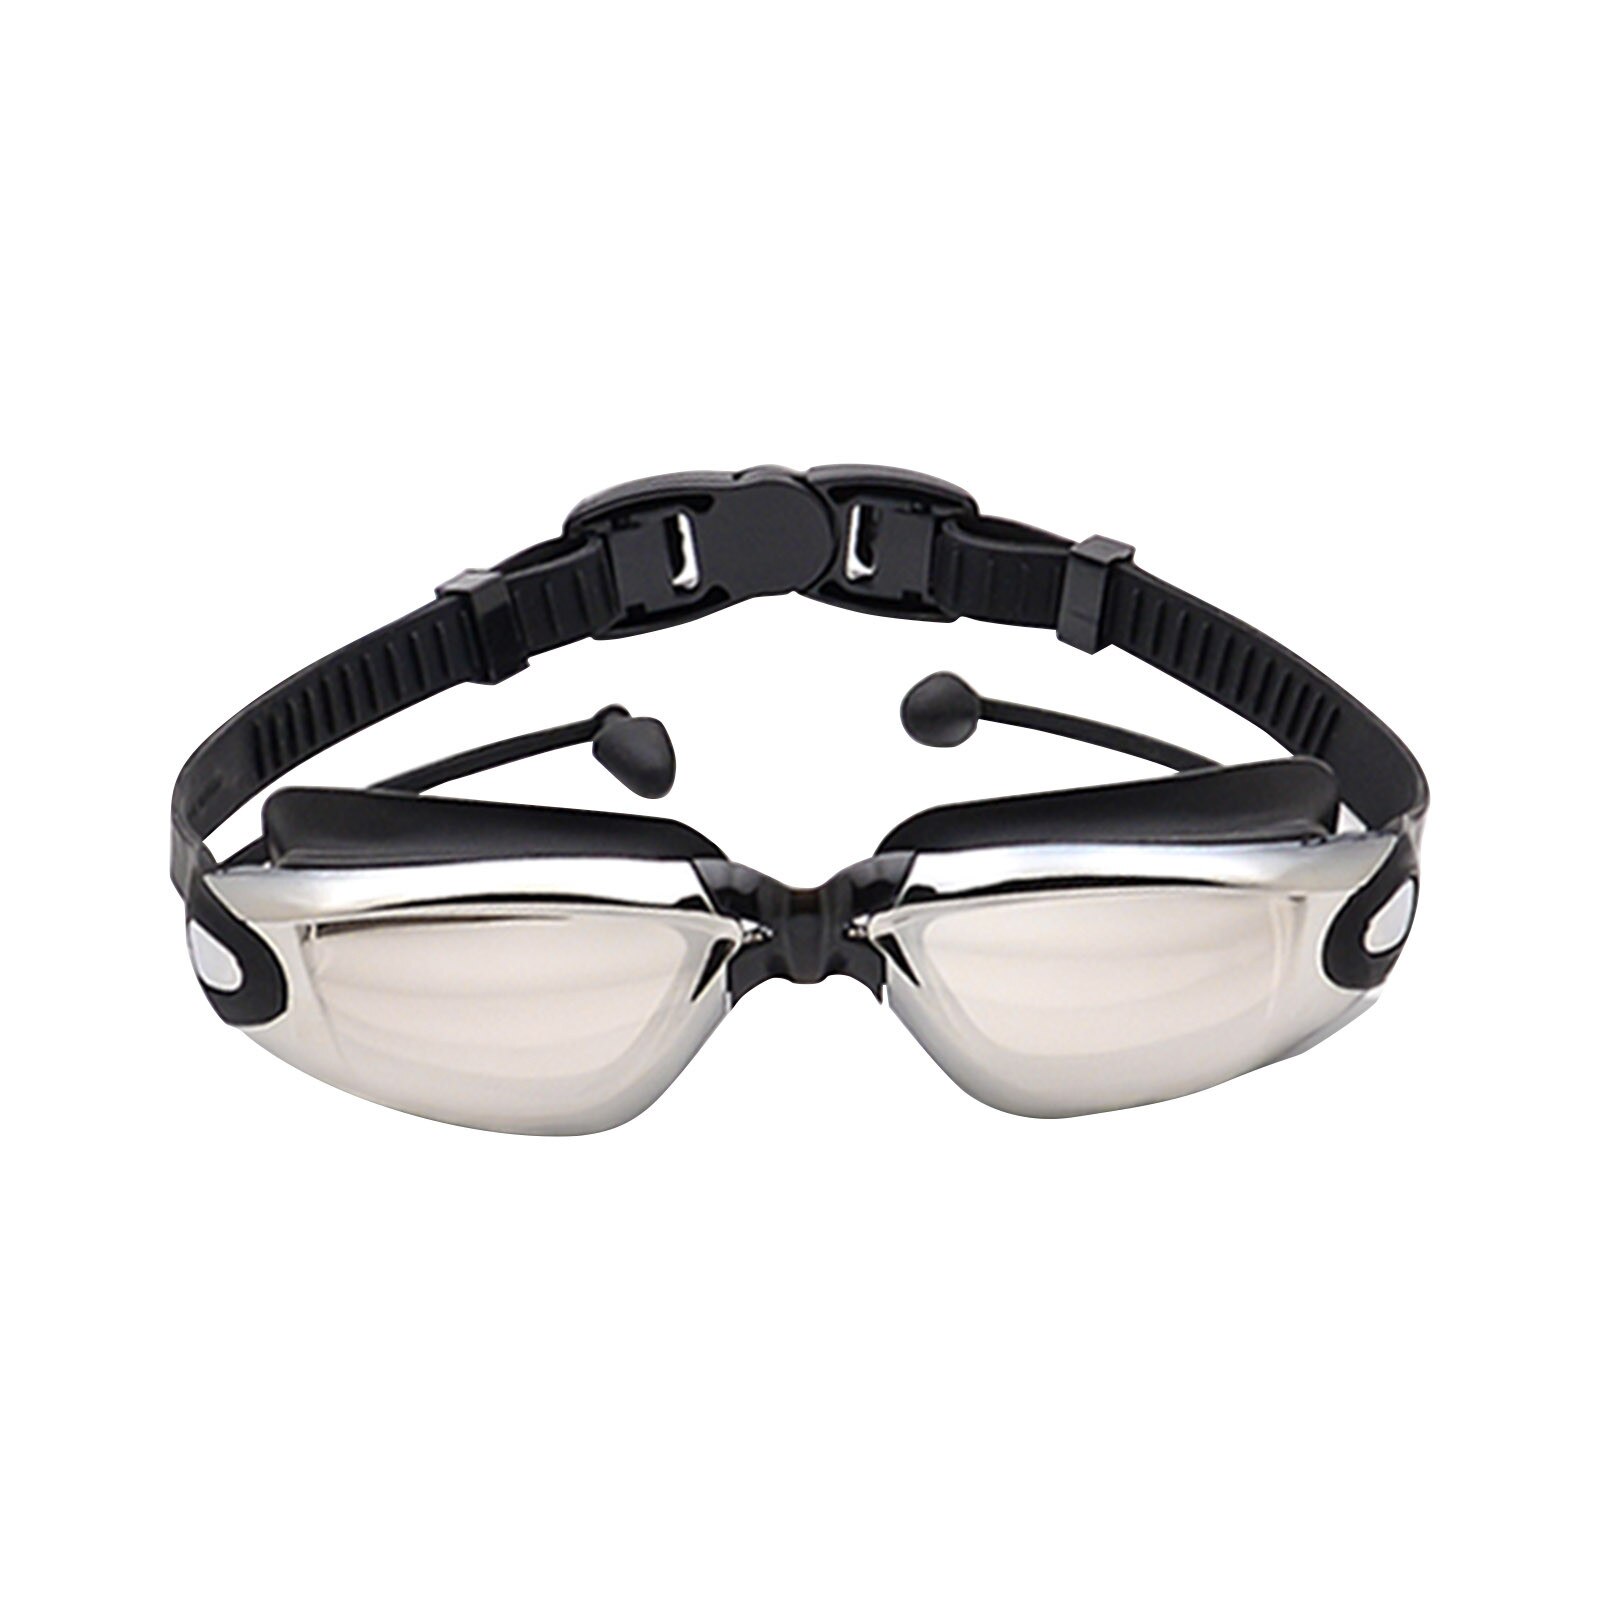 2 In 1 Volwassen Hd Waterdicht En Anti-Fog Siliconen Zwembril Met Oordopjes Anti-Vertigo Duiken Bril voor Beginners: BK